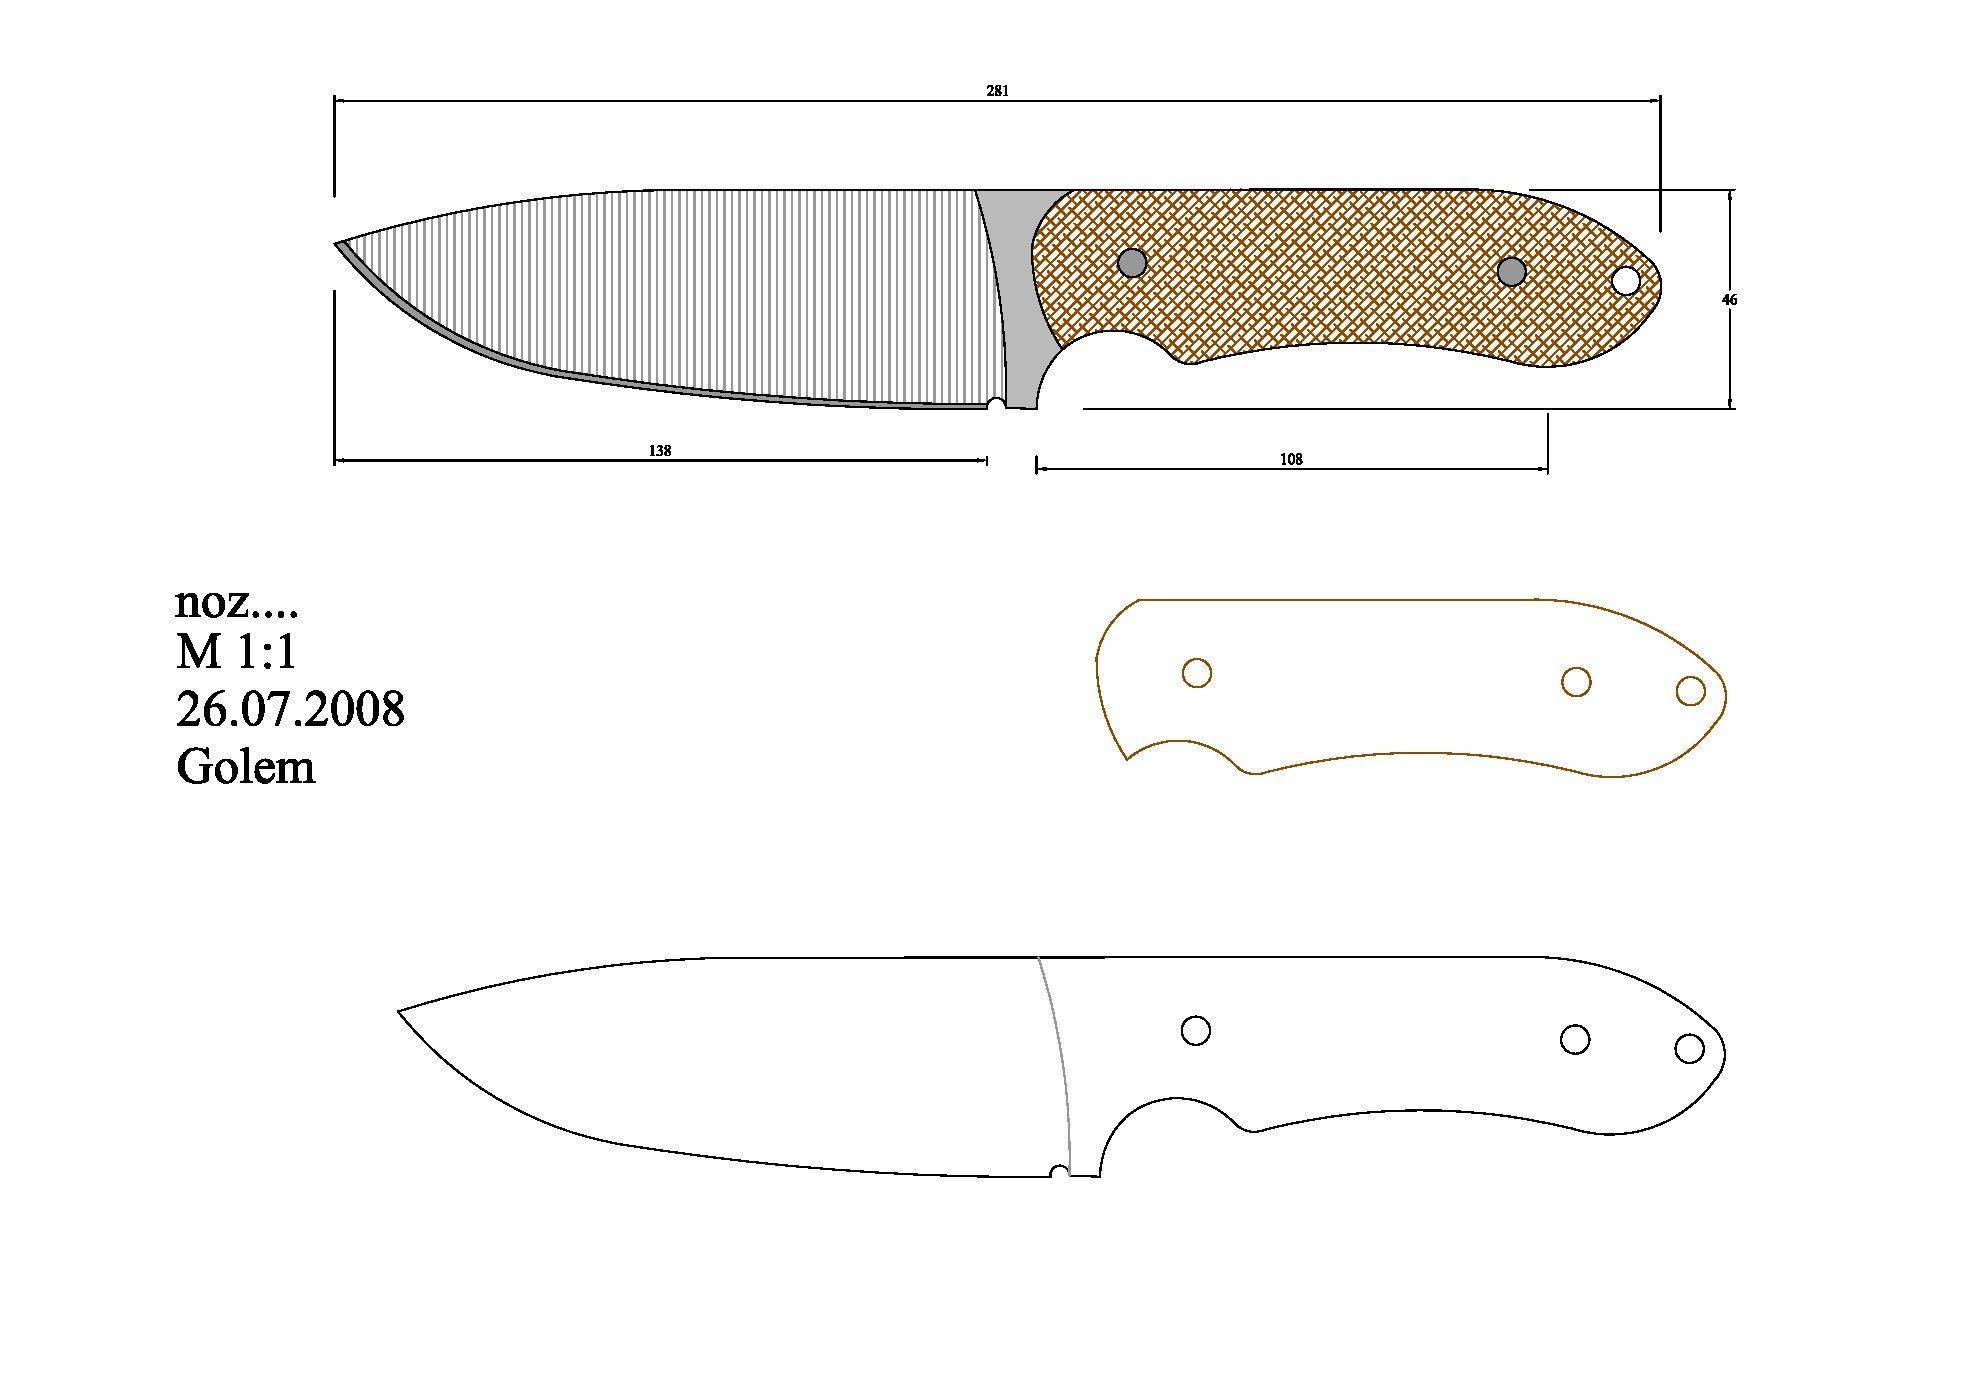 Как сделать нож из дерева своими руками в домашних условиях видео. как сделать нож своими руками: изготовление охотничьего инструмента от а до я (115 фото и видео)